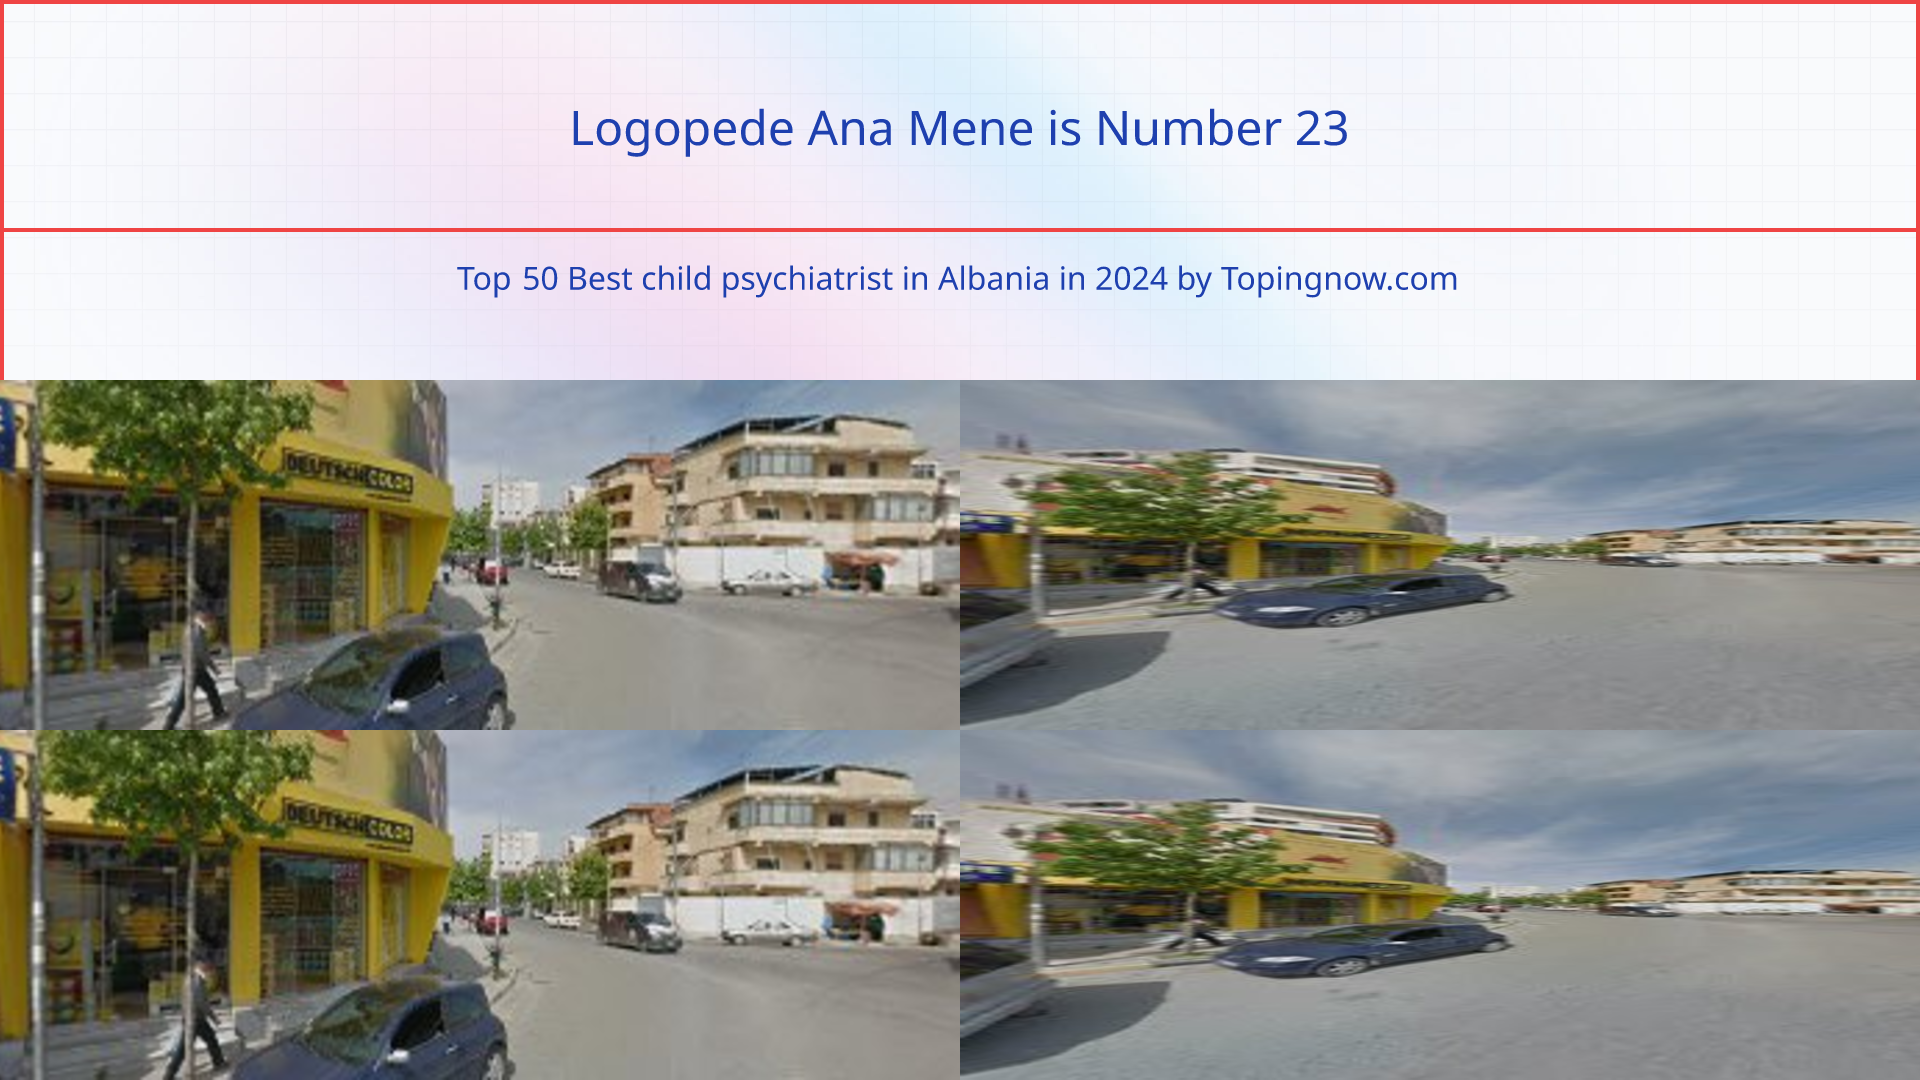 Logopede Ana Mene: Top 50 Best child psychiatrist in Albania in 2024